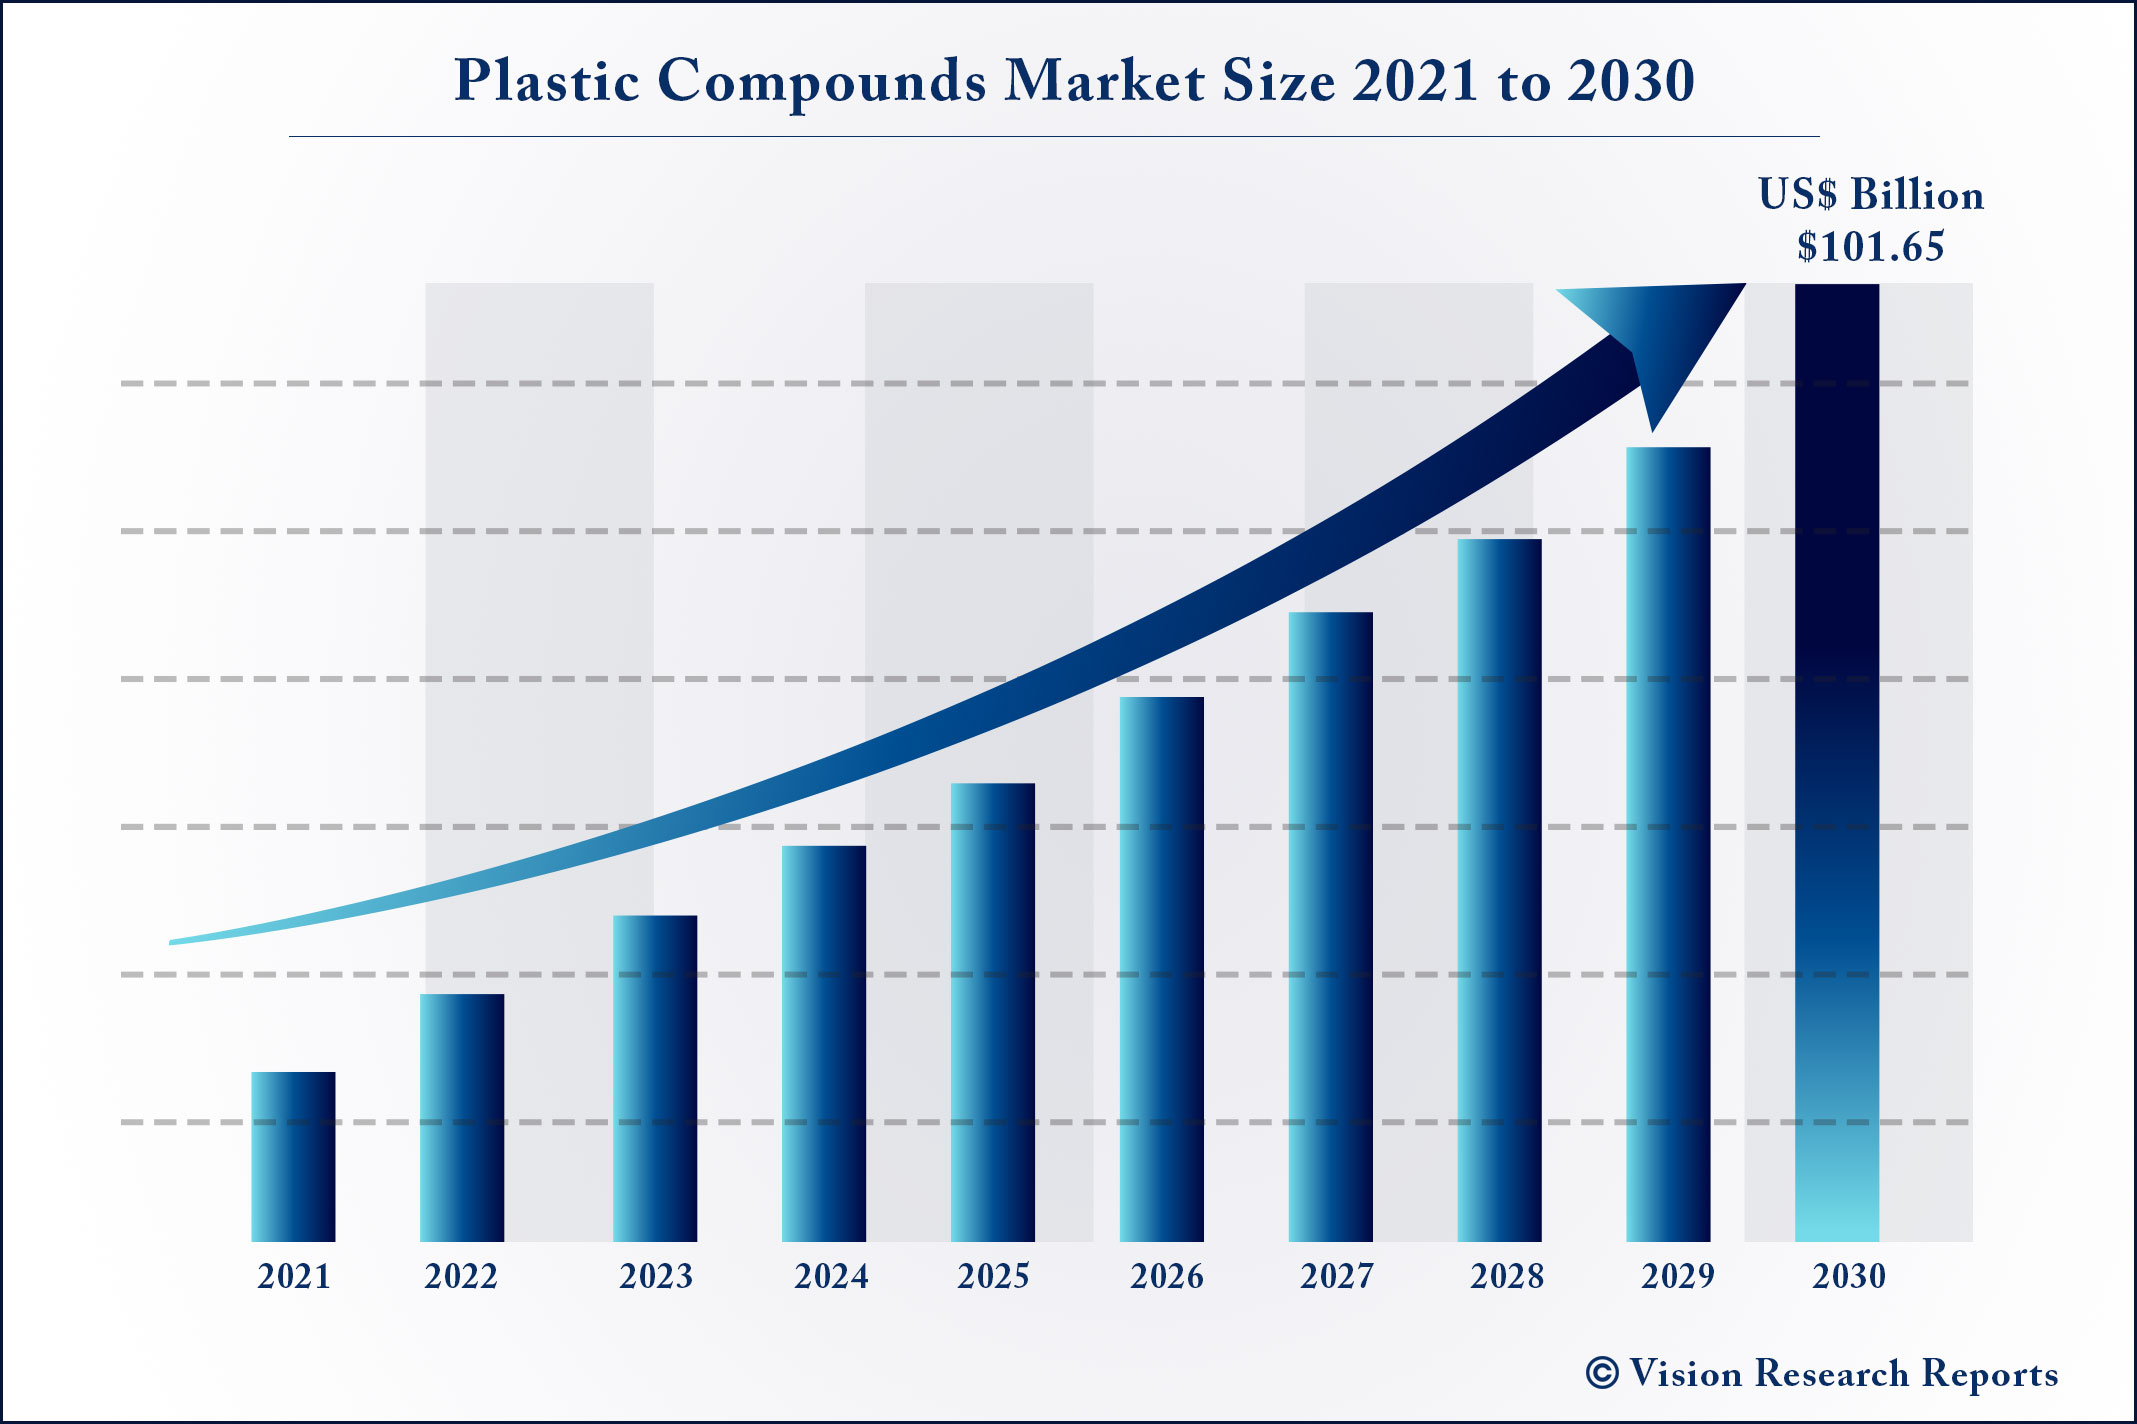 Plastic Compounds Market Size 2021 to 2030